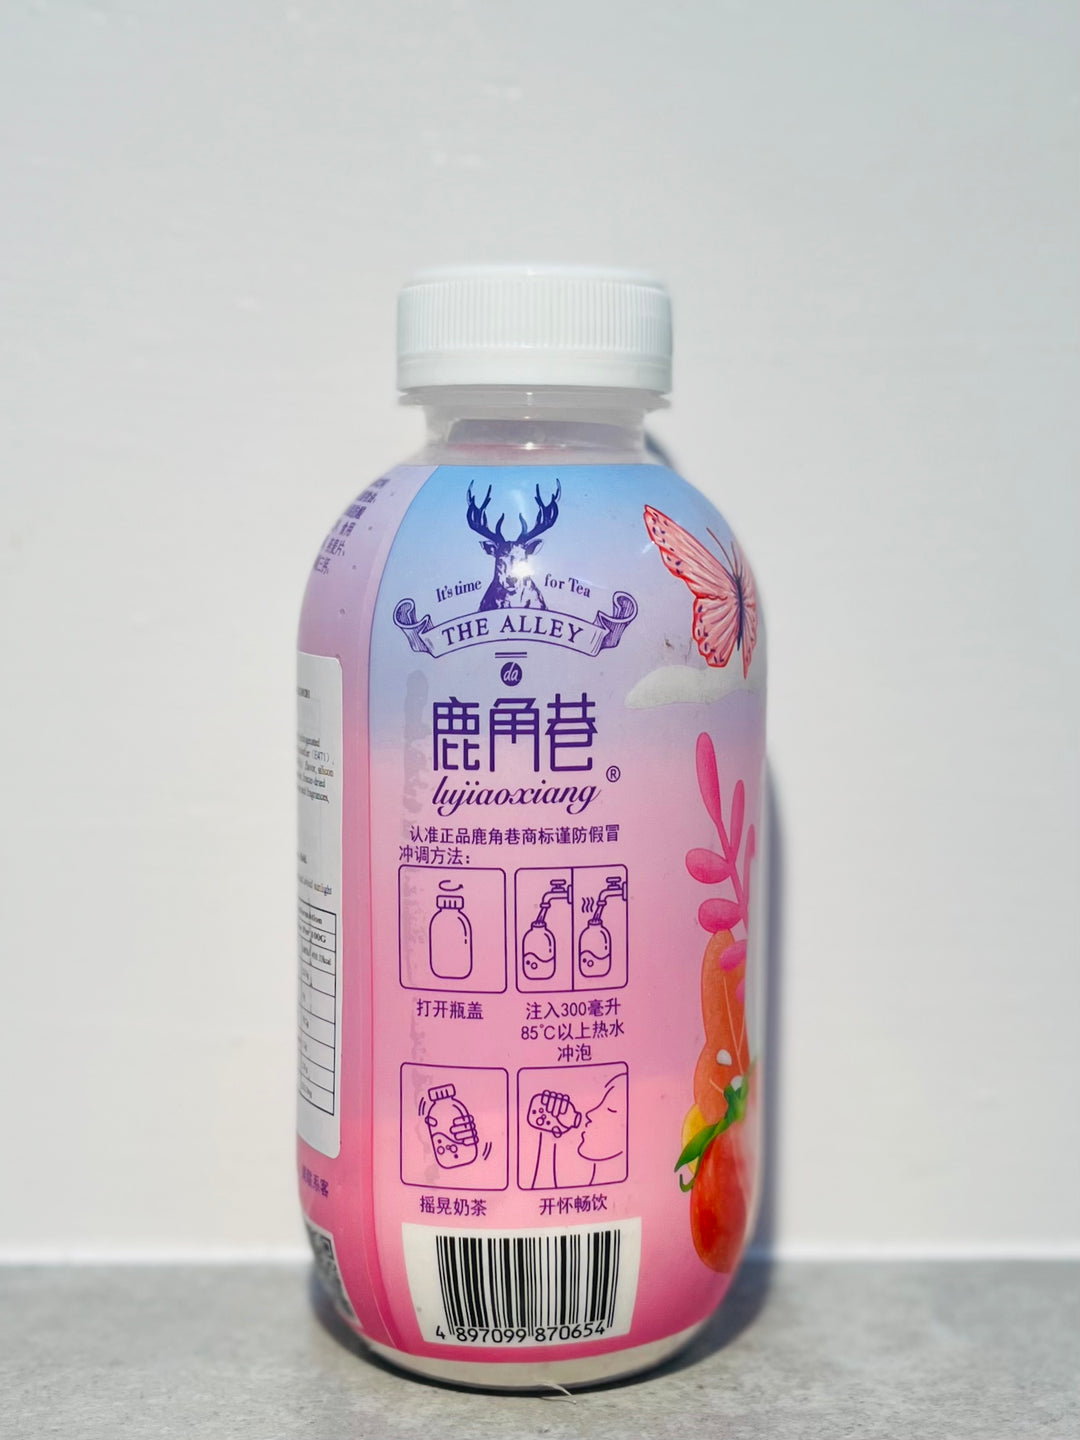 鹿角巷小轻瓶草莓味65g LJX Strawberry Milk Shake